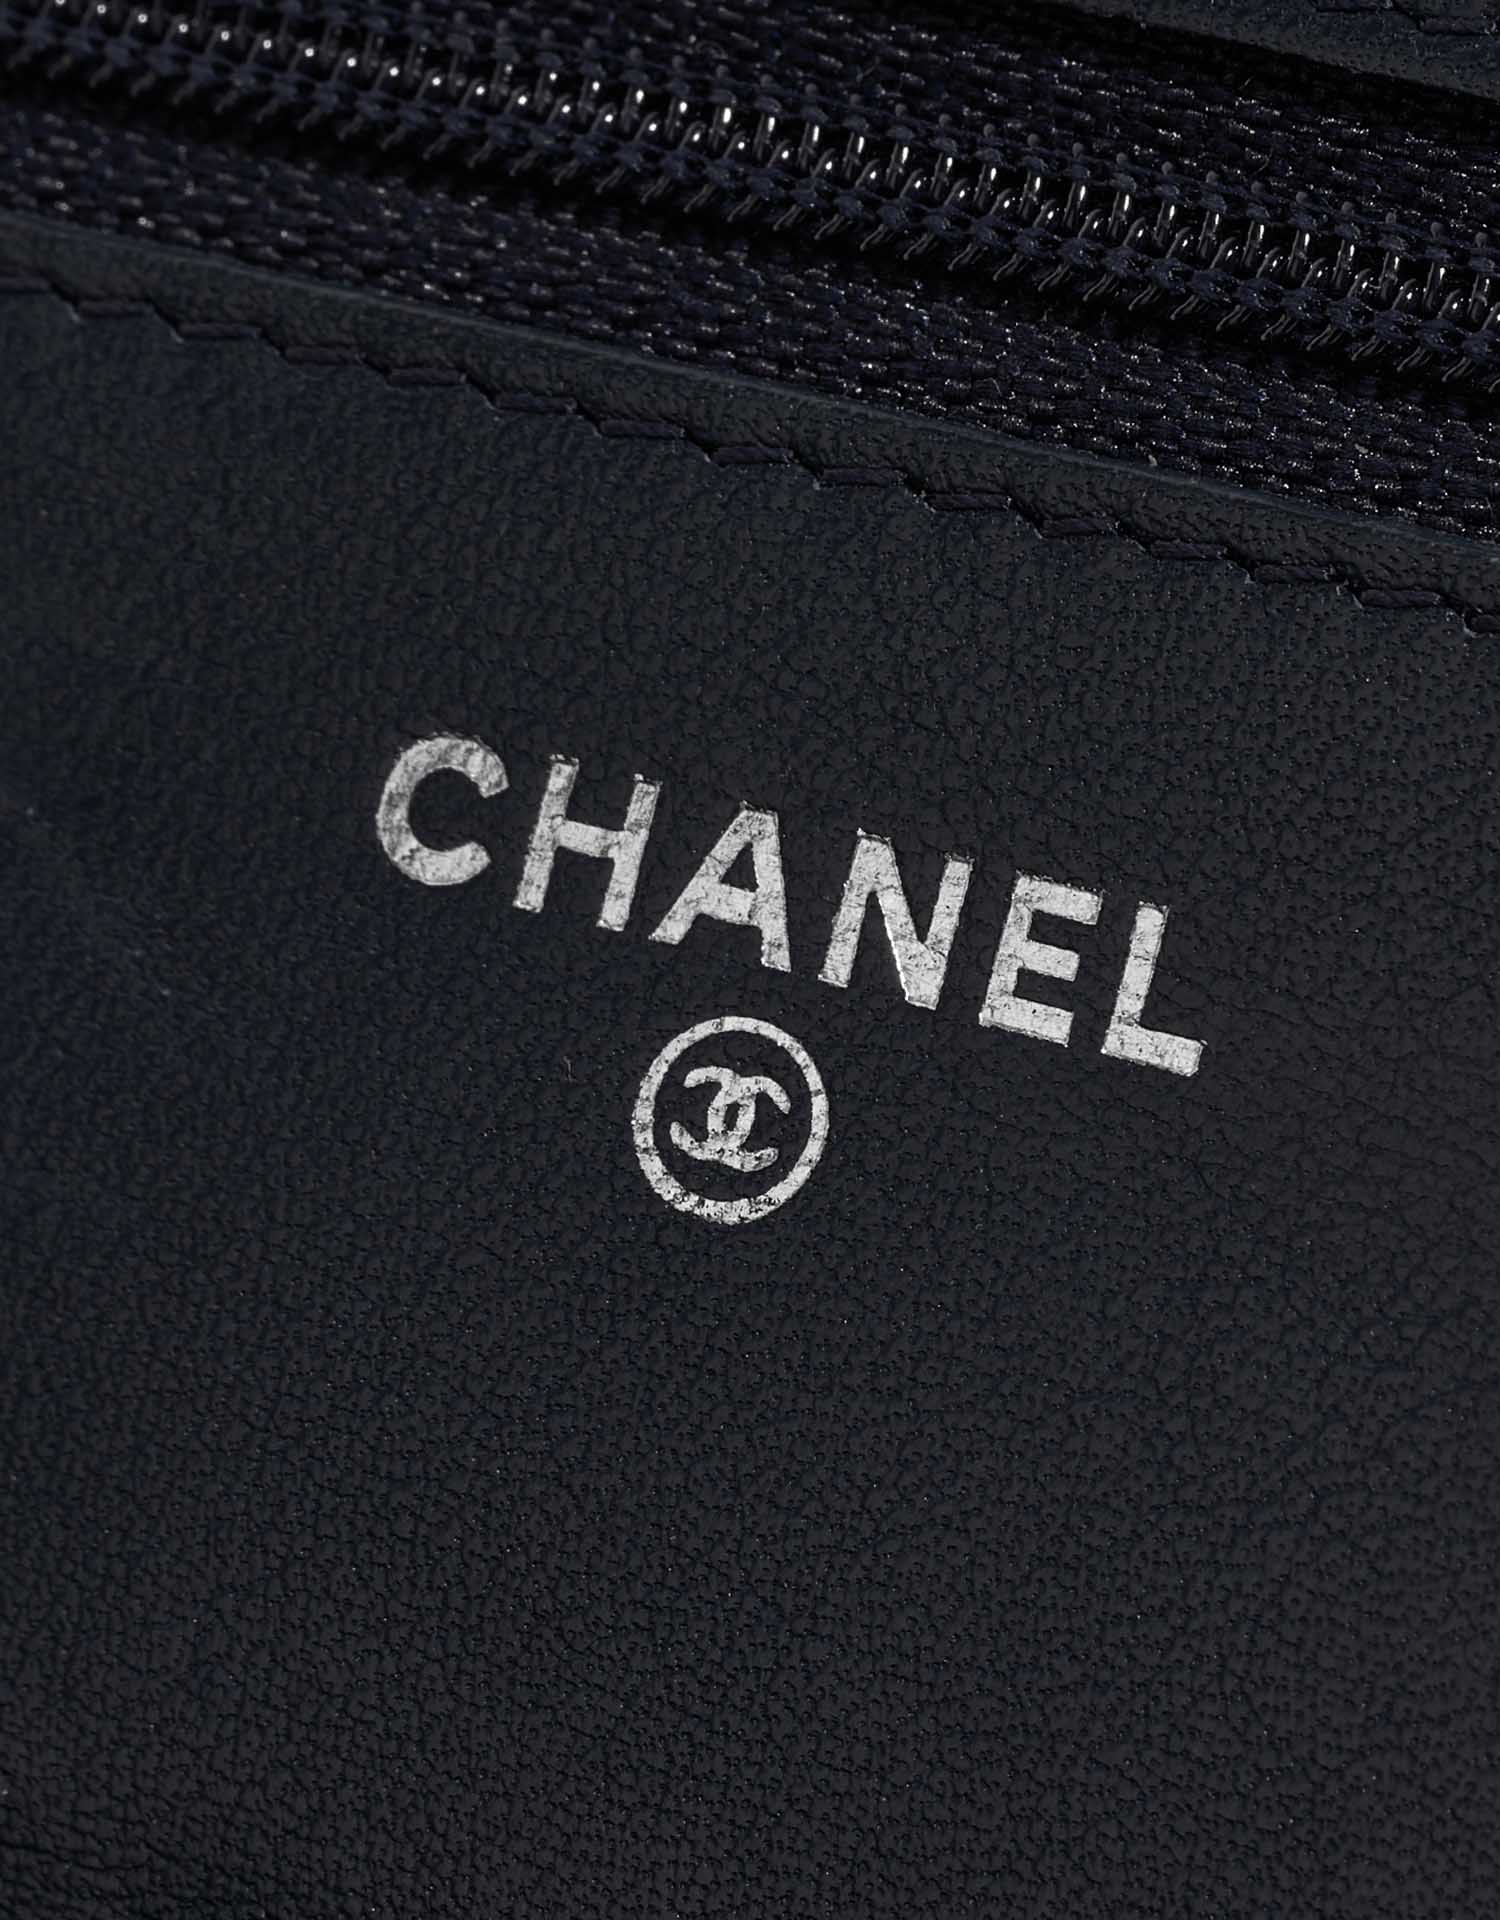 Chanel Timeless WOC DarkBlue Logo | Verkaufen Sie Ihre Designer-Tasche auf Saclab.com